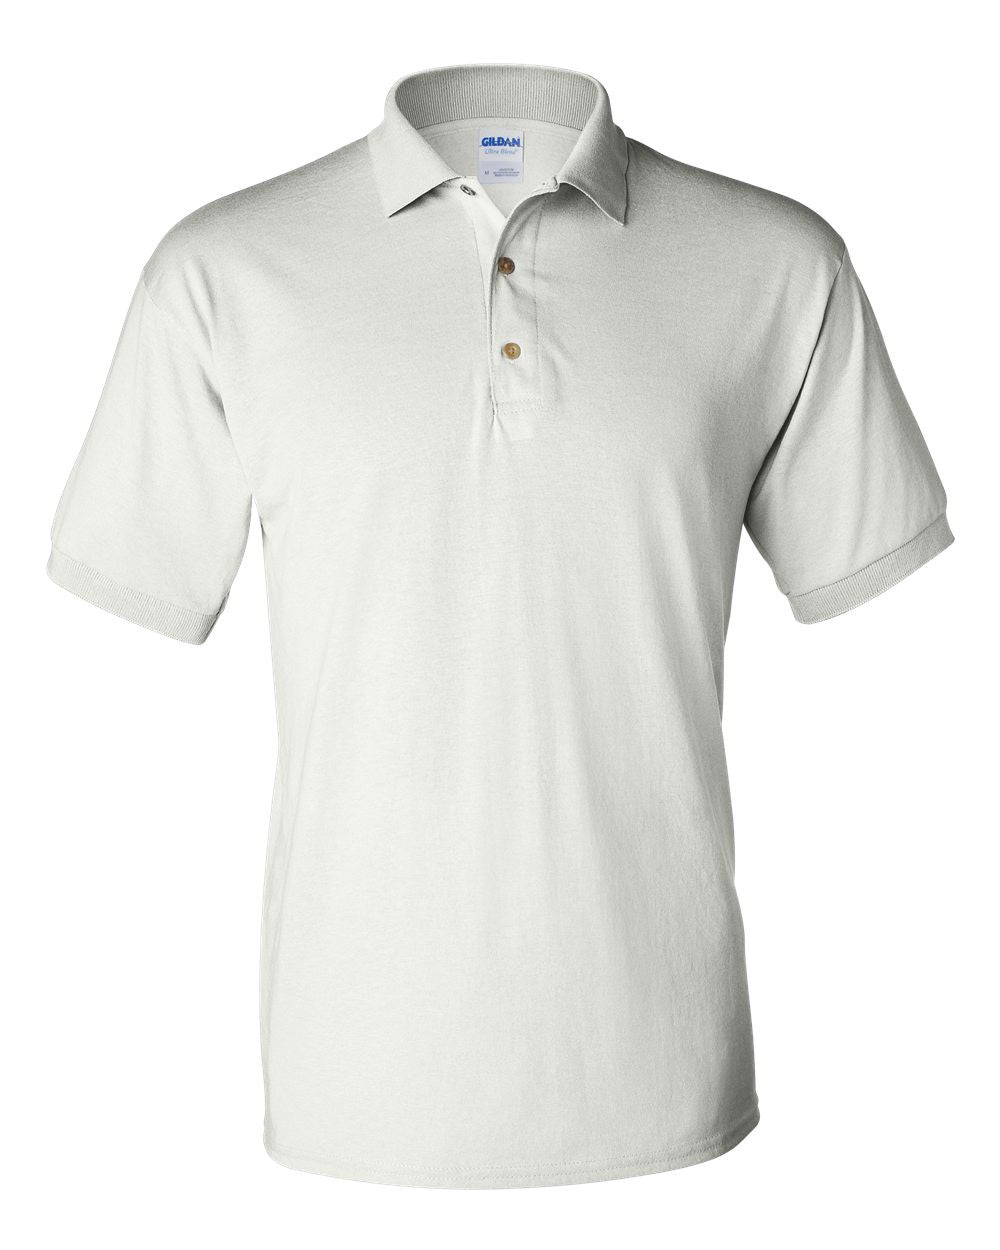 Blank Uniform Short Sleeve Polo